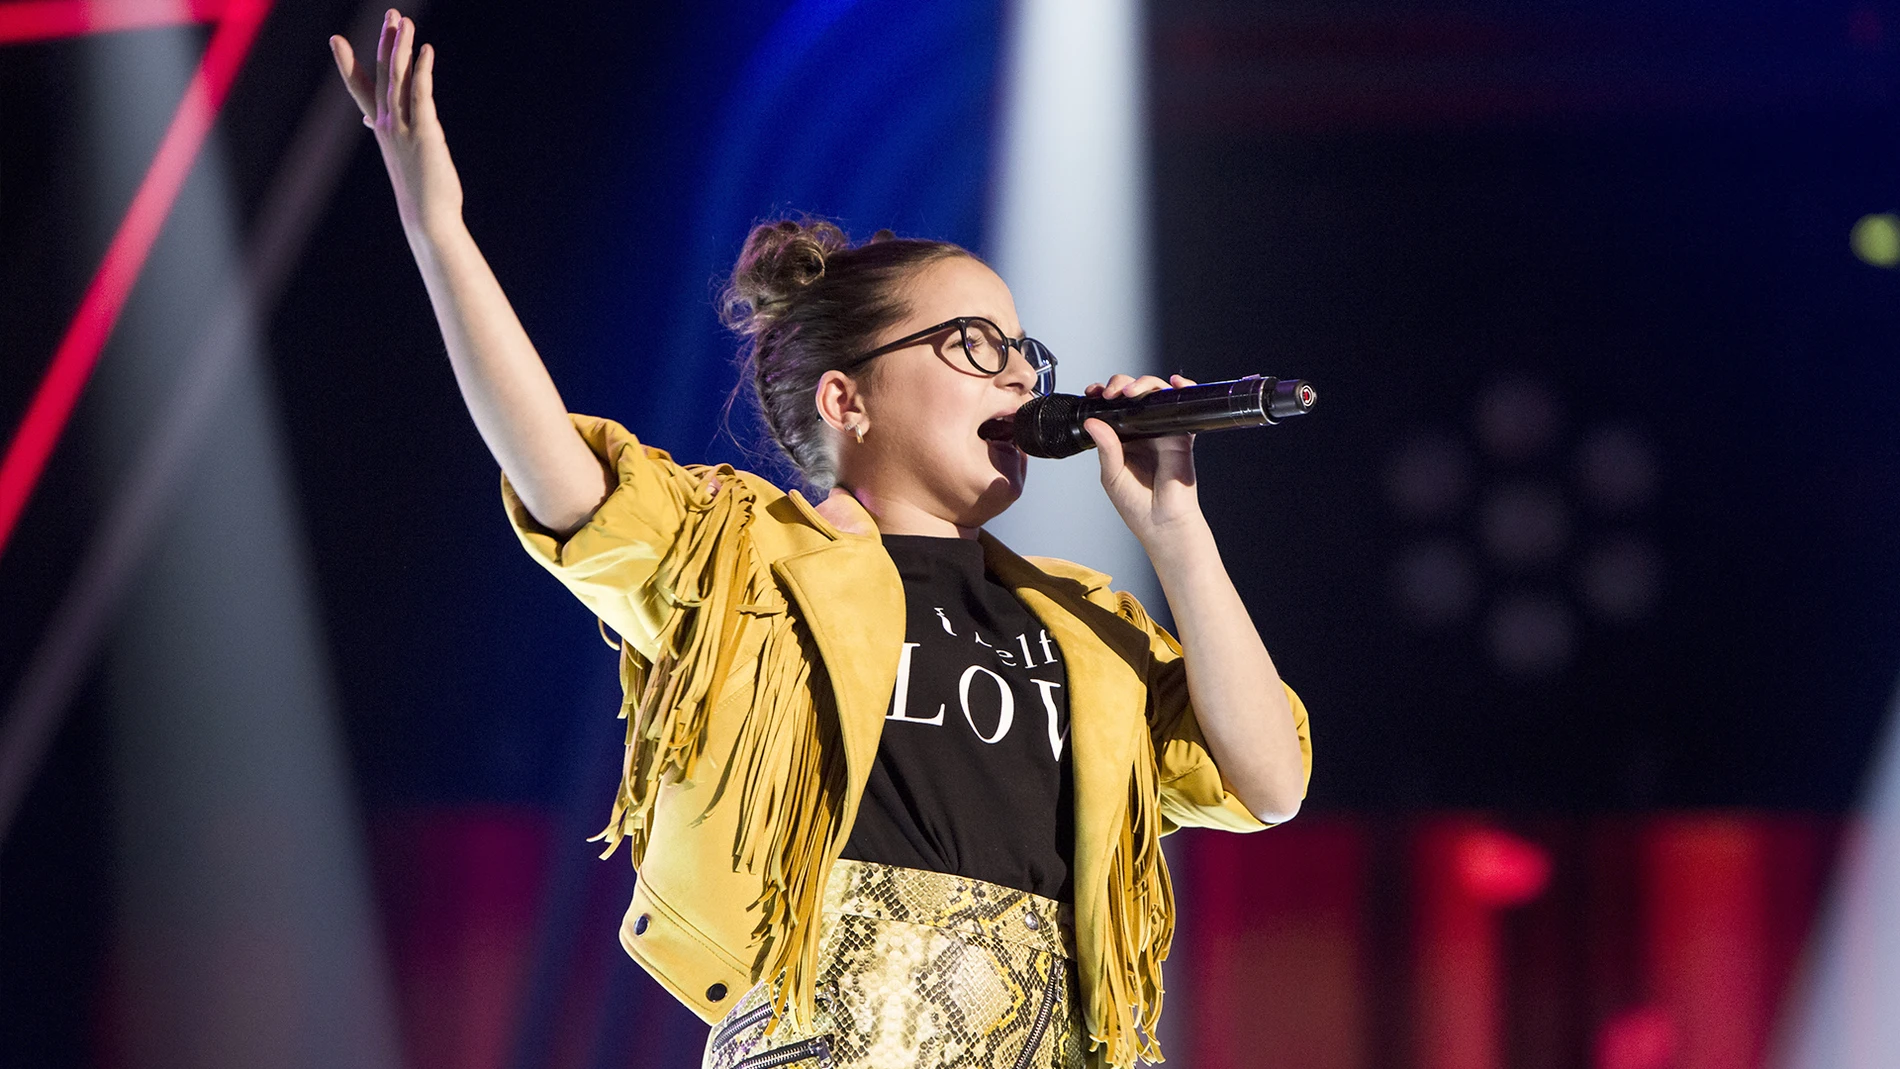 Paloma Puelles canta ‘Te lo juro’ en la Semifinal de ‘La Voz Kids’